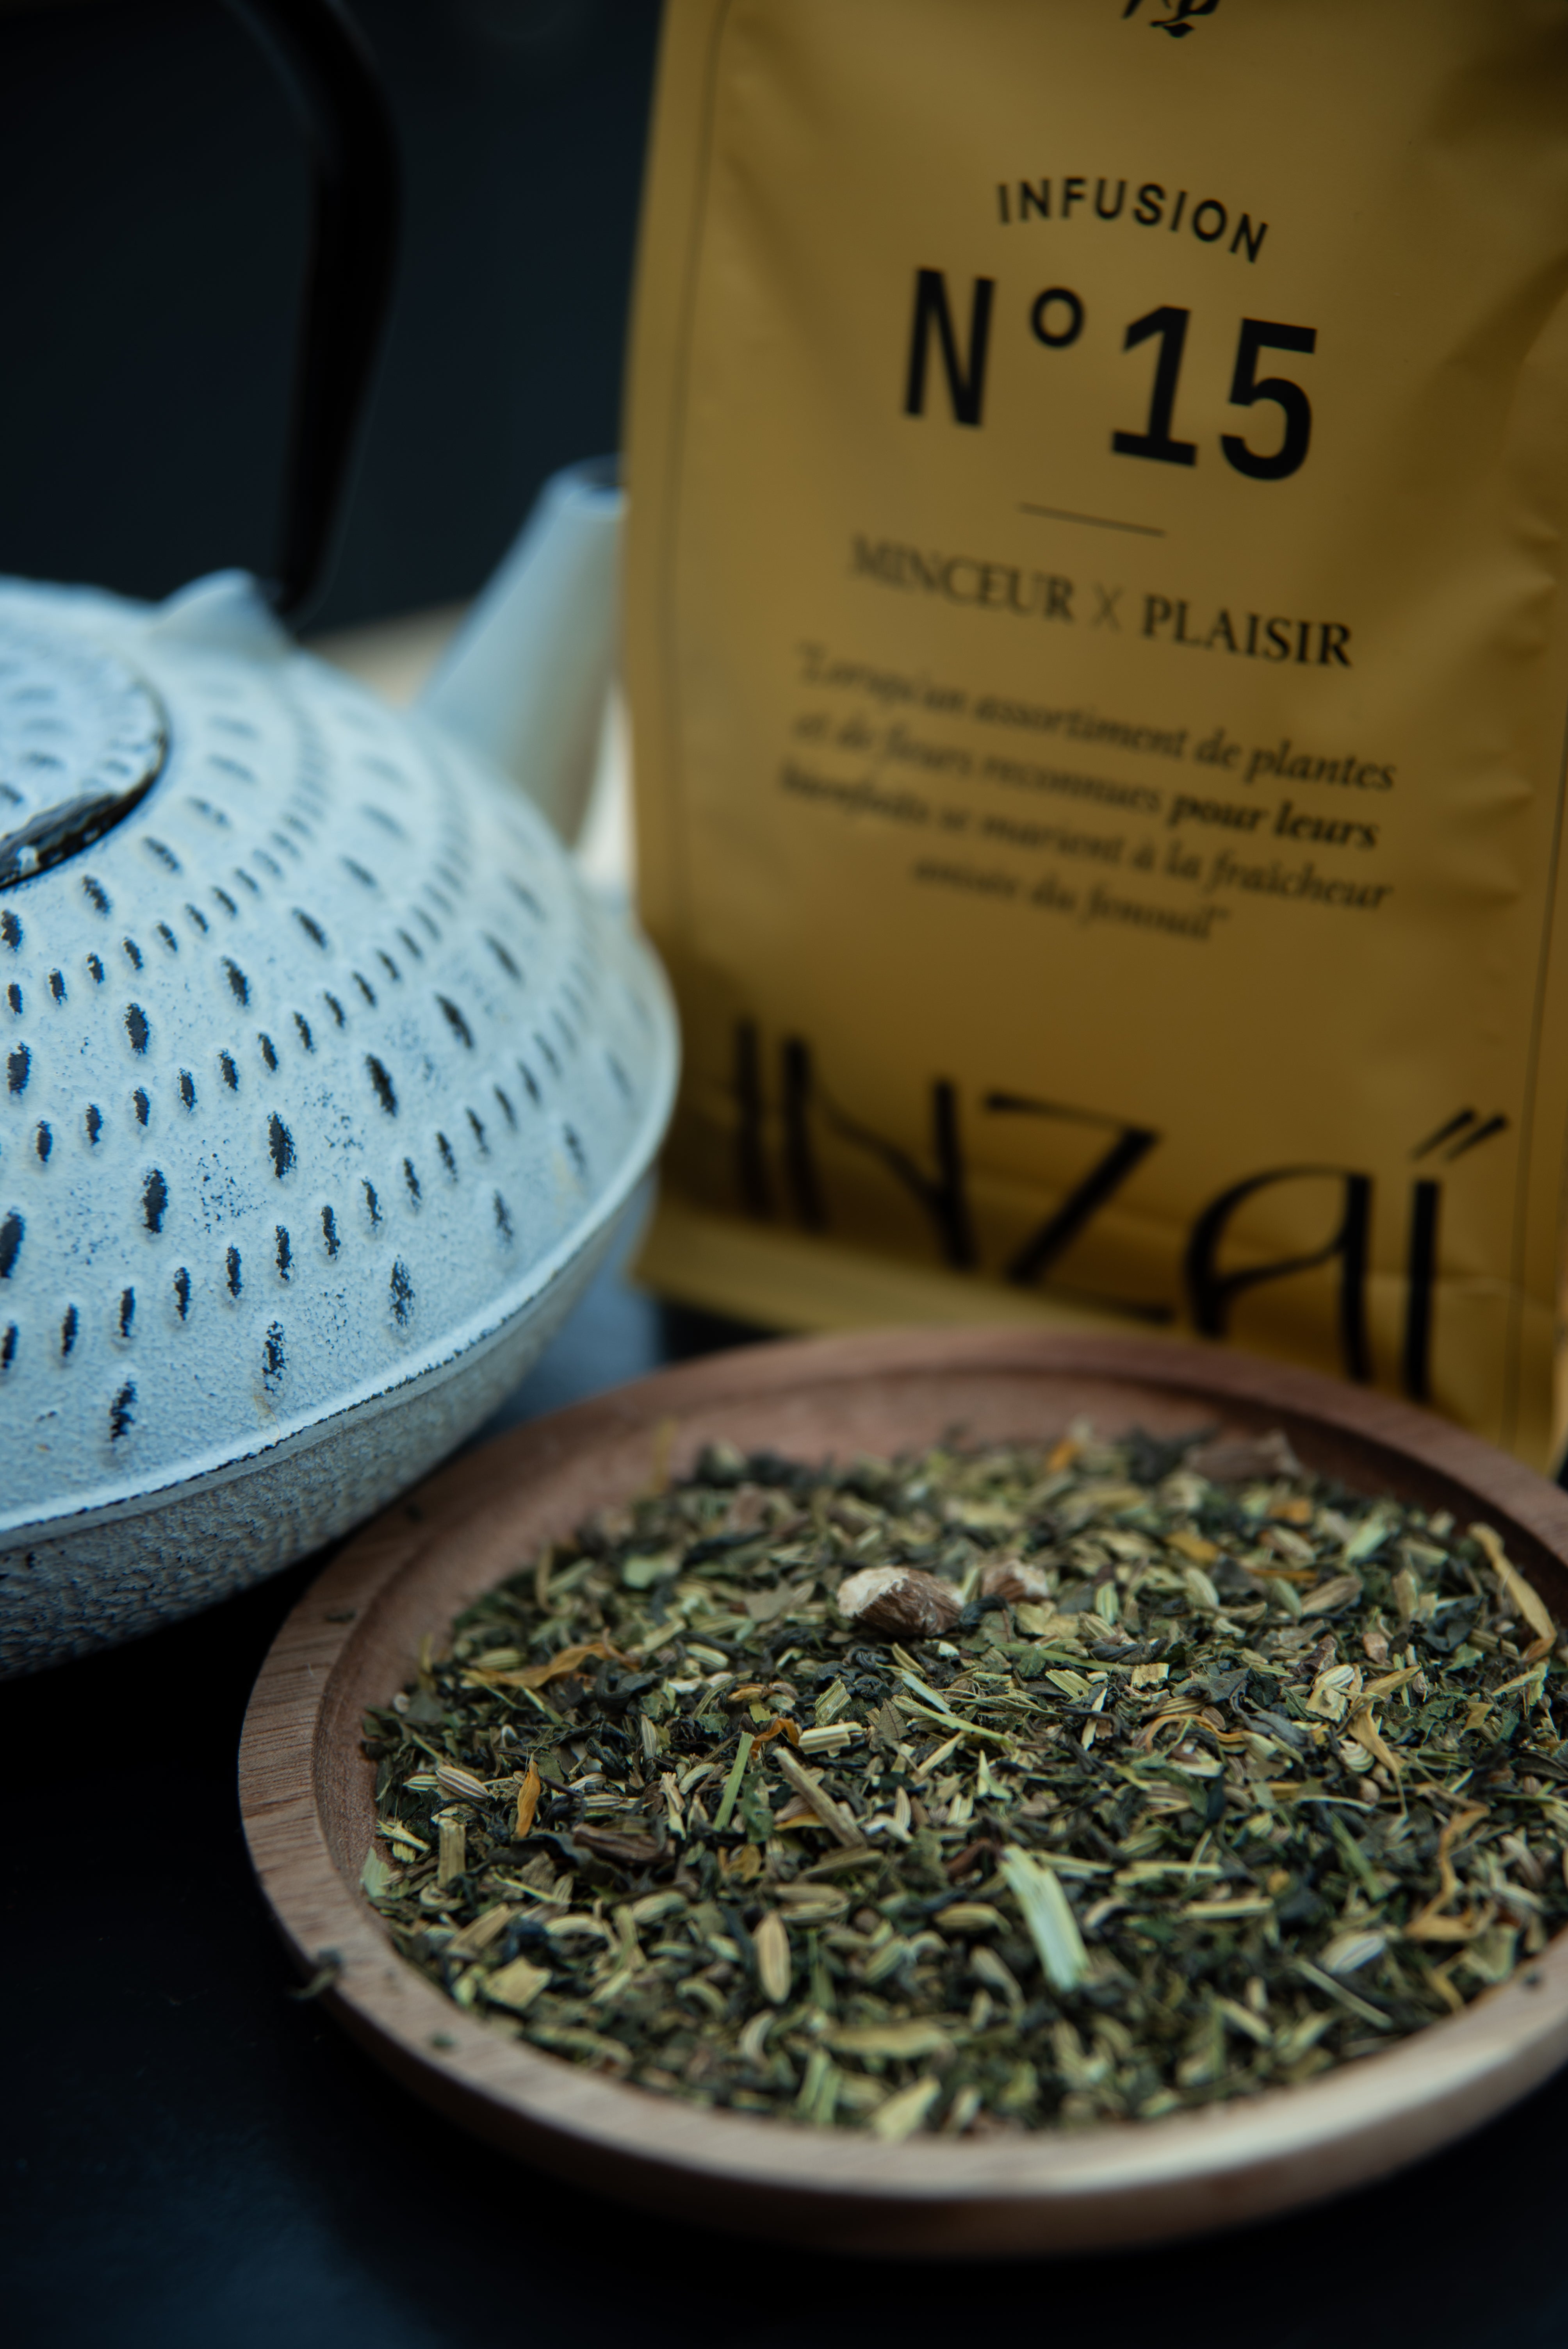 N°15 Infusion Minceur X Plaisir – Inzai Tea